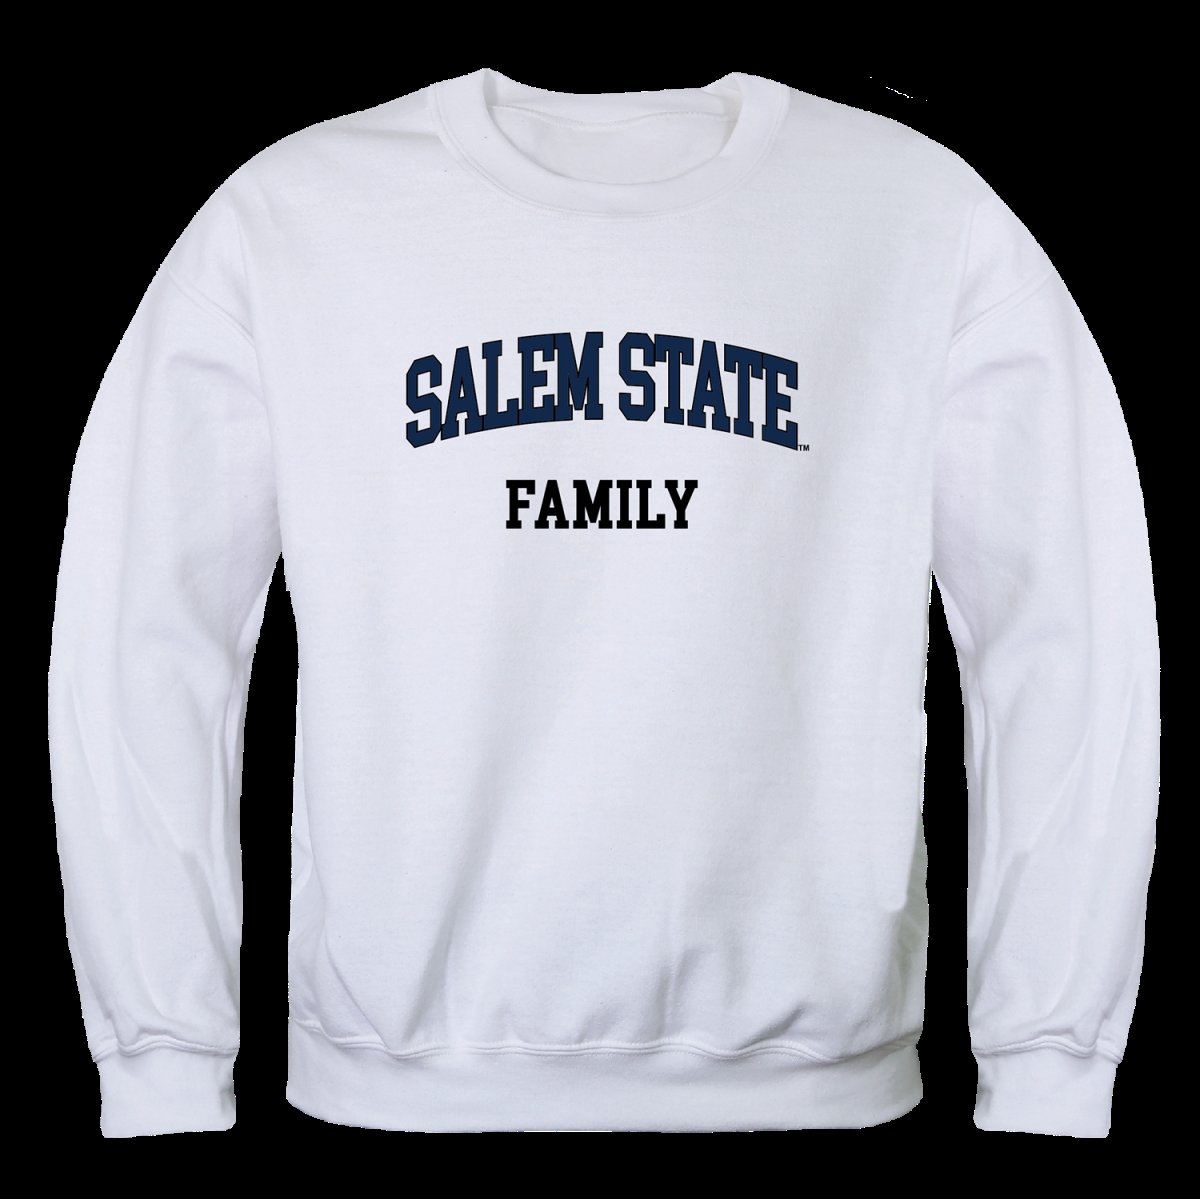 FinalFan Salem State University Vikings Family Crewneck Sweatshirt&#44; White - Small